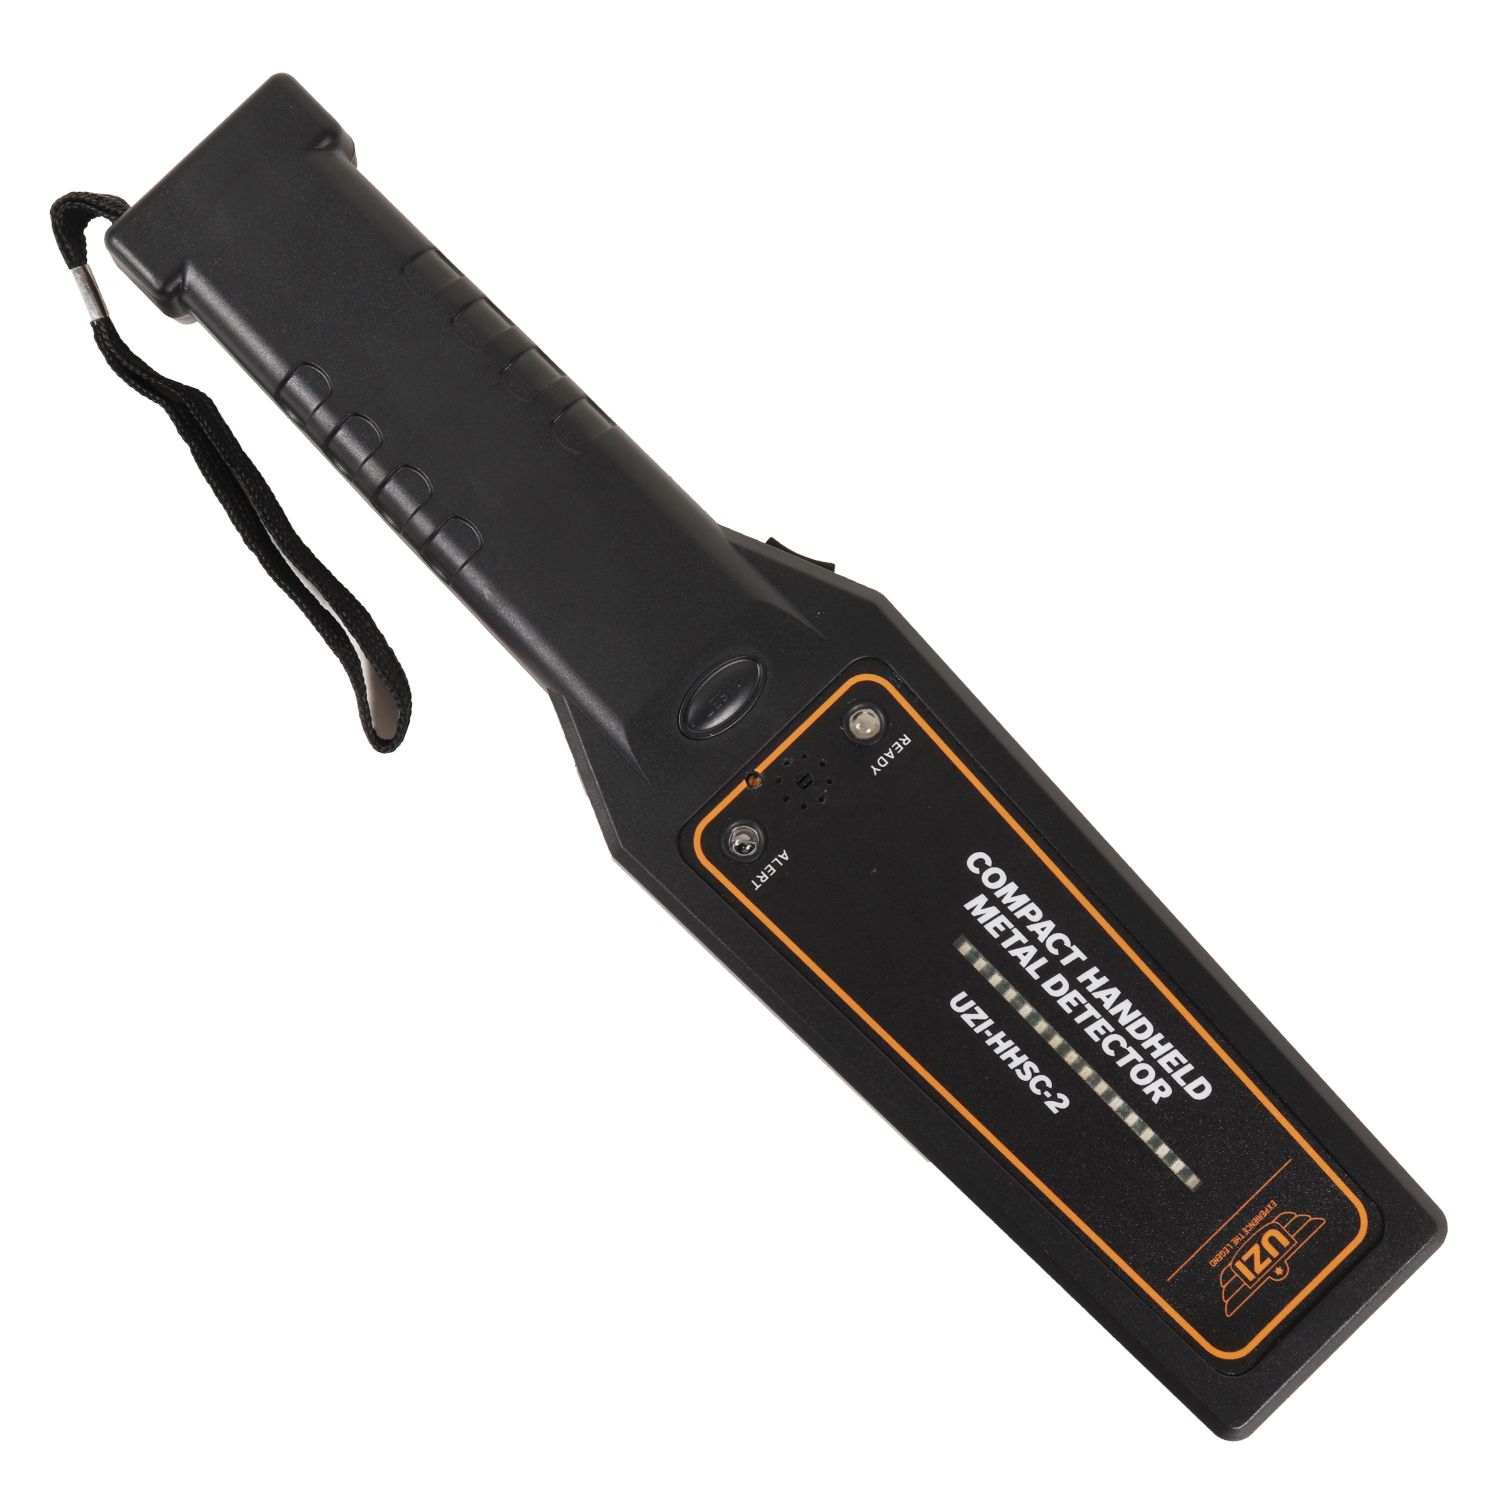 HHSC-2 Handheld Metal Detector BLACK UZI UZI-HHSC-2 L-11